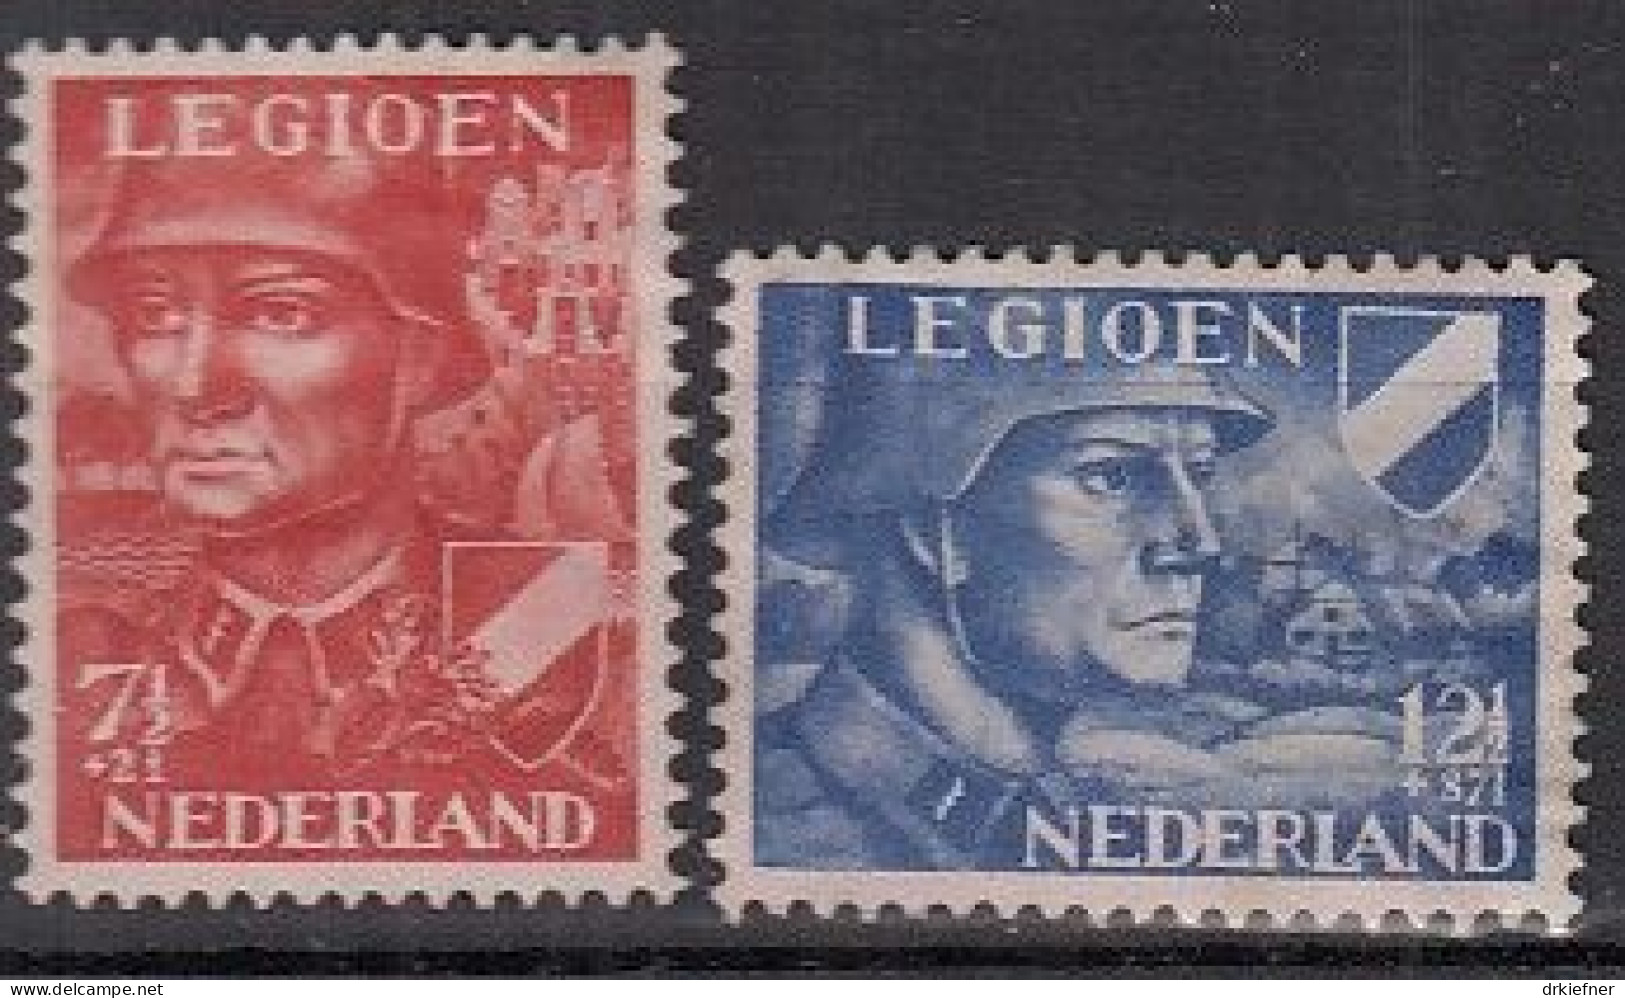 NIEDERLANDE 402-403, Postfrisch **, Niederländische Legion, 1942 - Unused Stamps